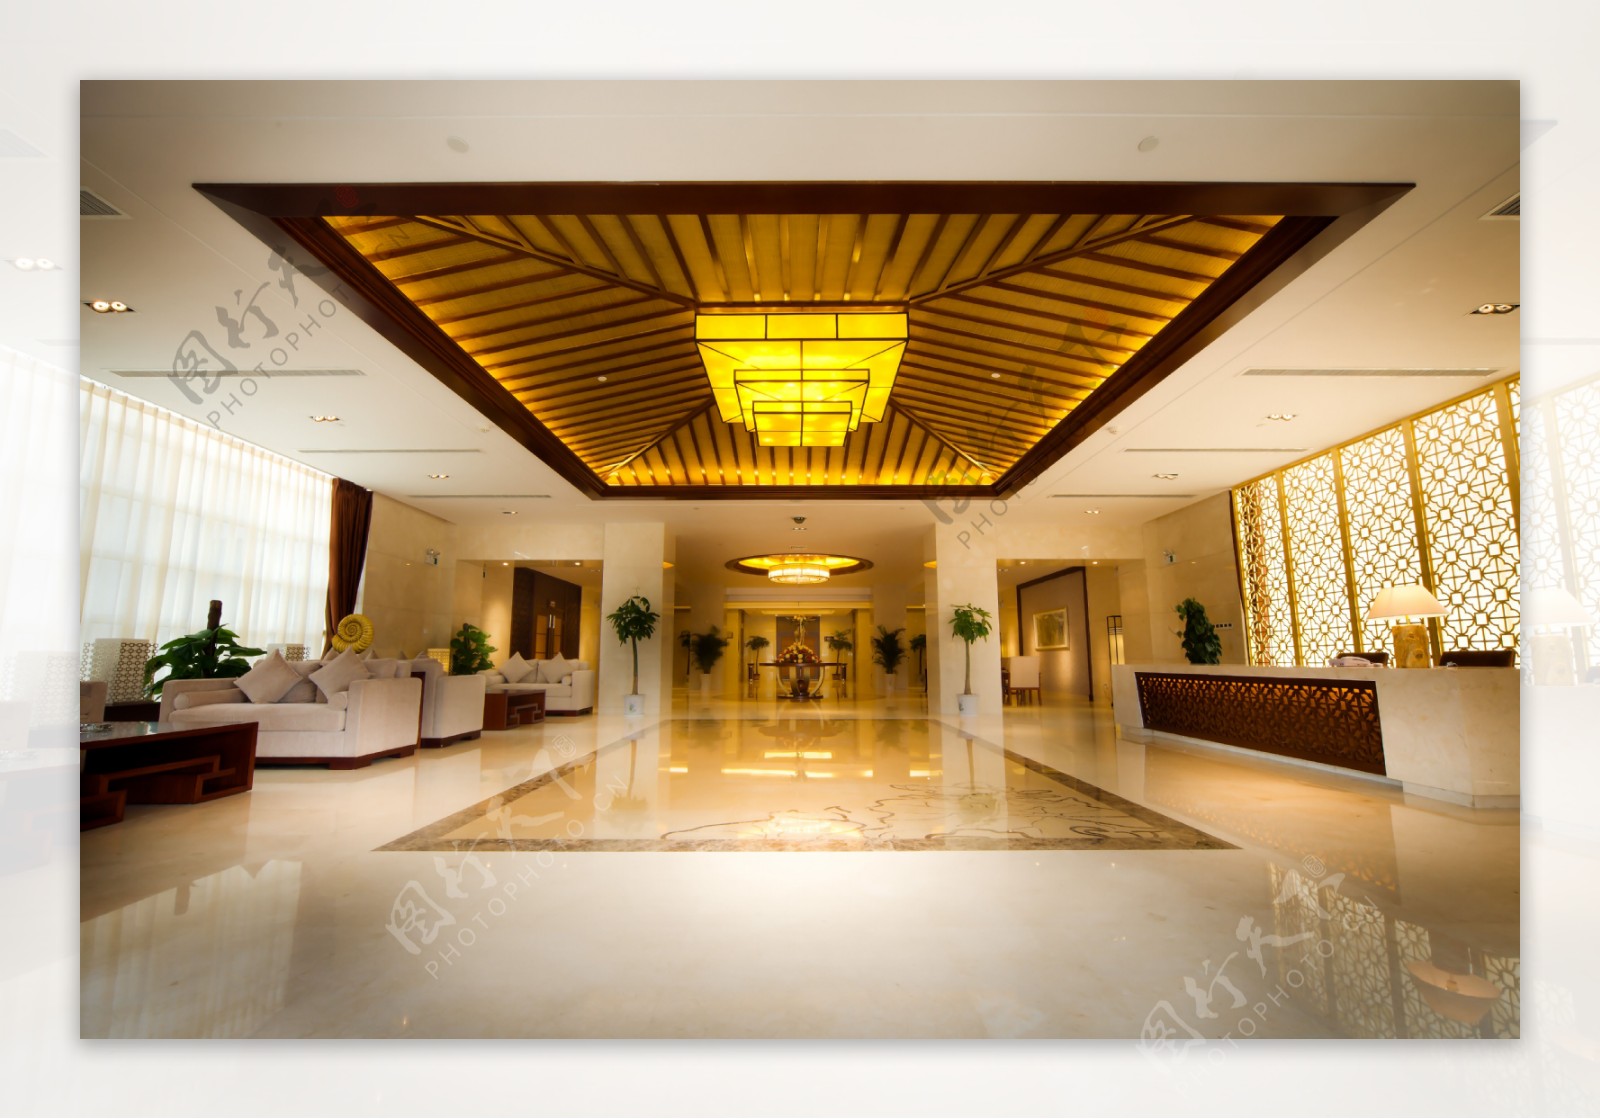 山东聊城阿尔卡迪国际温泉酒店副楼大堂图片